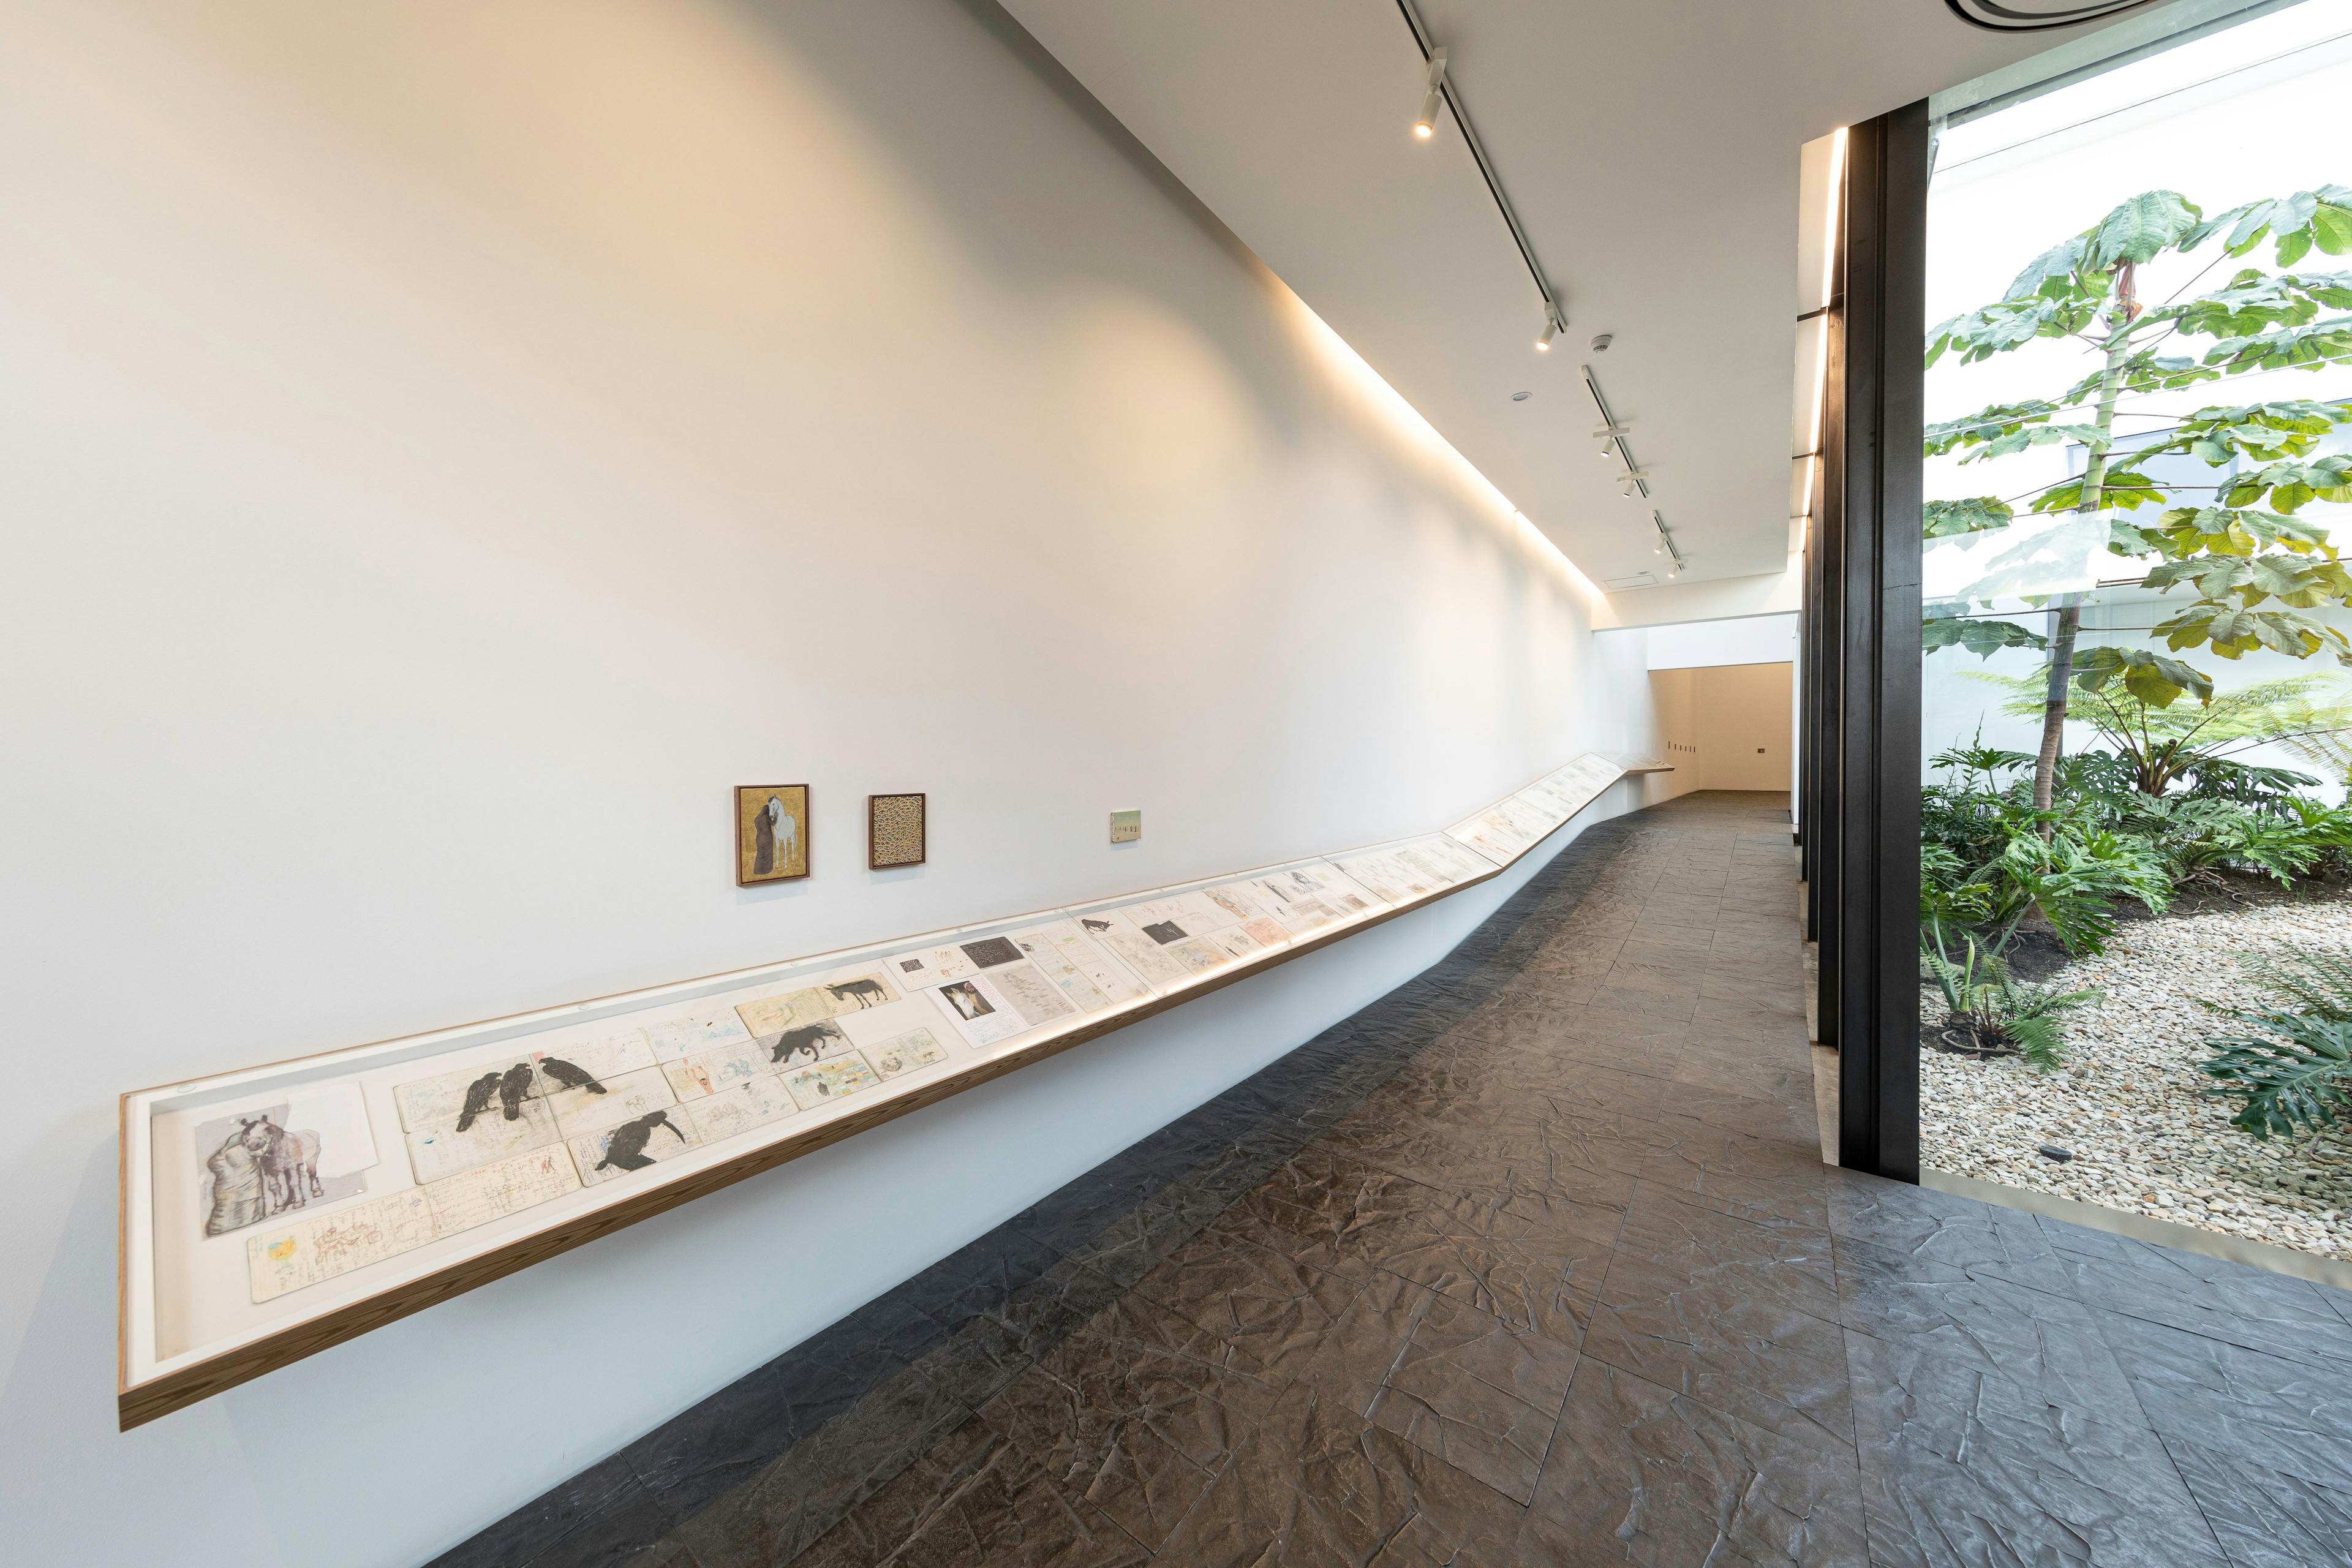 Installation view of the exhibition, Salam Tristesse: Irak, 2016–2020, at Fragmentos, Espacio de Arte y Memoria, Museo Nacional de Colombia in Bogotá, dated 2021.